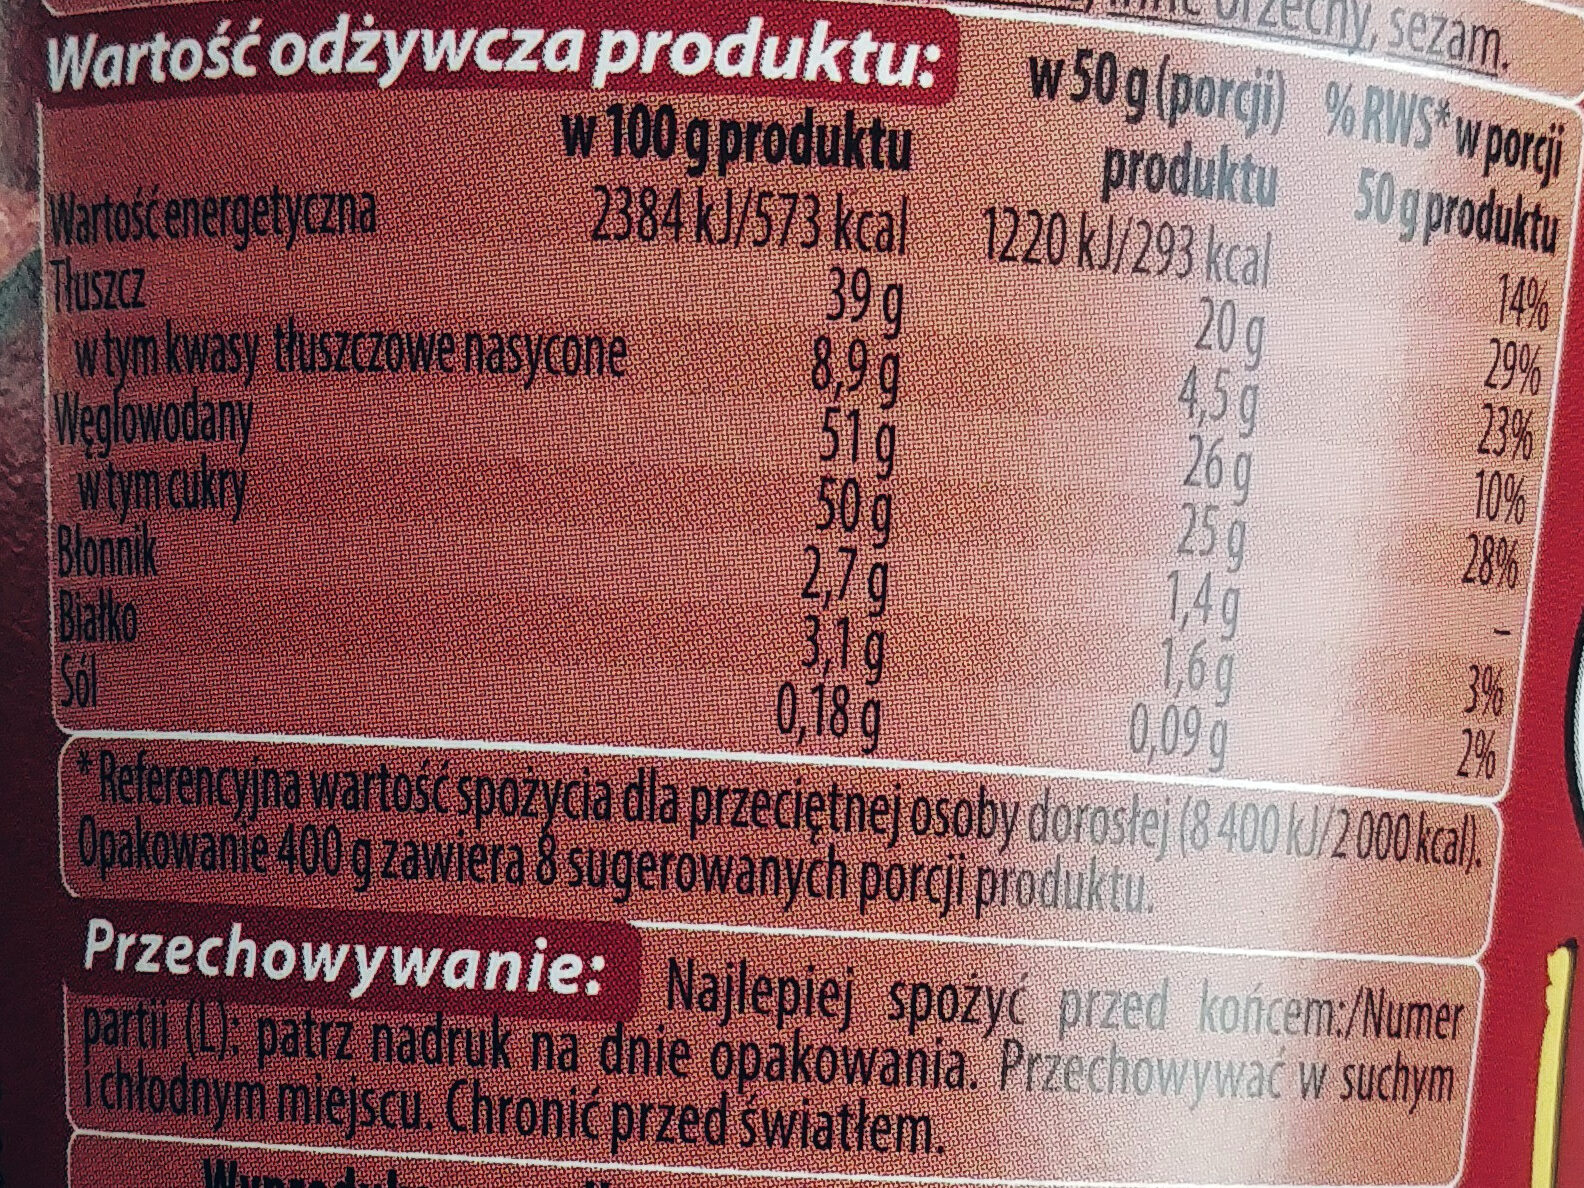 Chocofini krem o smaku czekoladowym - Voedingswaarden - pl